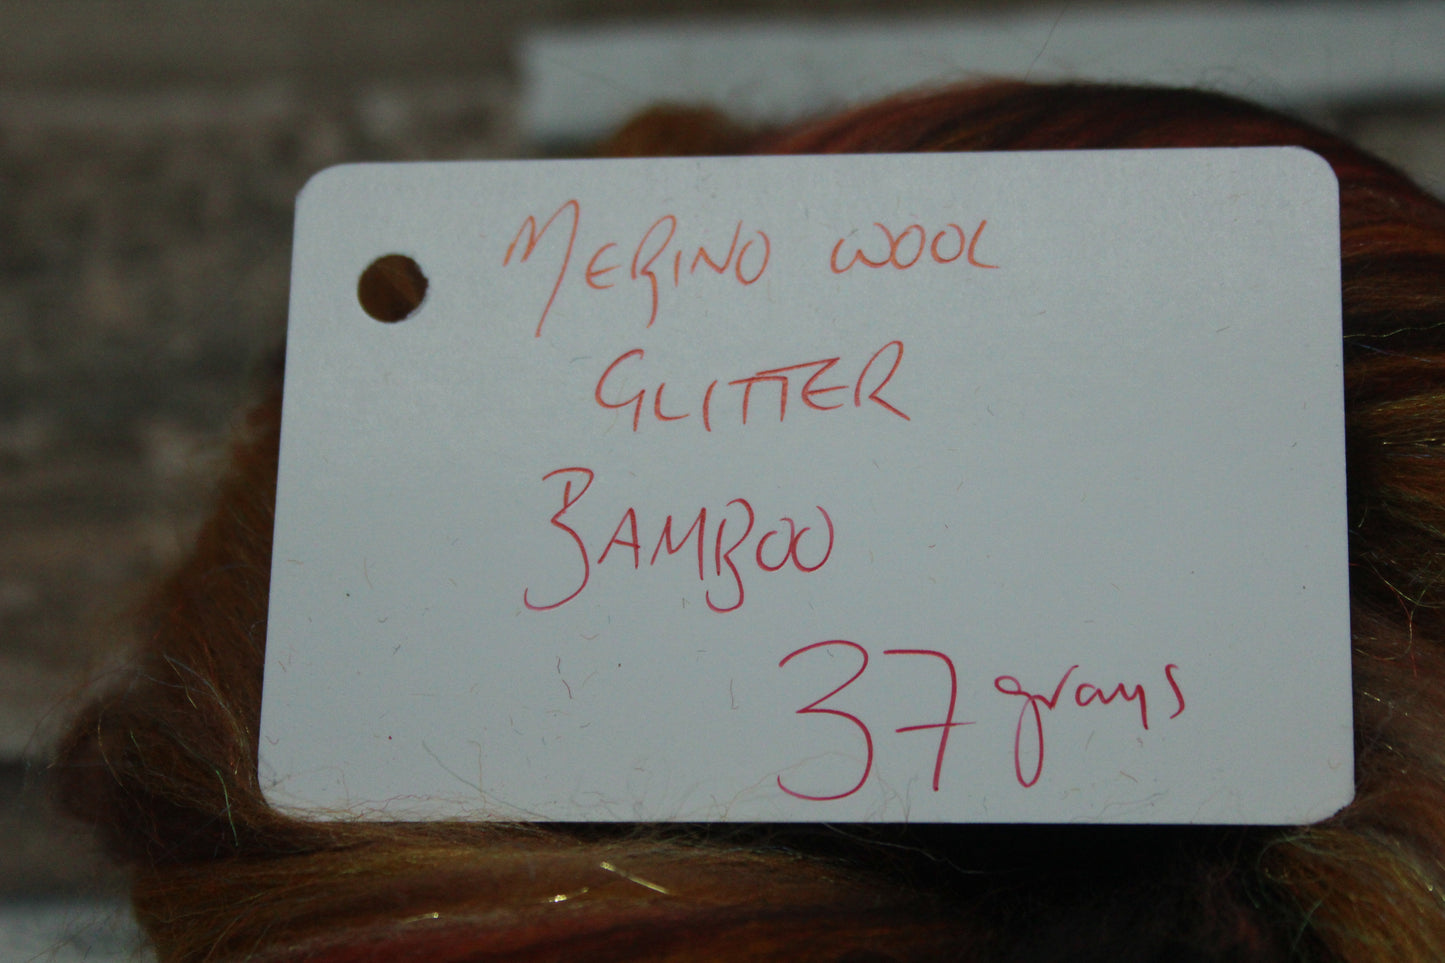 Merino Wool Blend - Brown Orange - 37 grams / 1.3 oz  - Fibre for felting, weaving or spinning